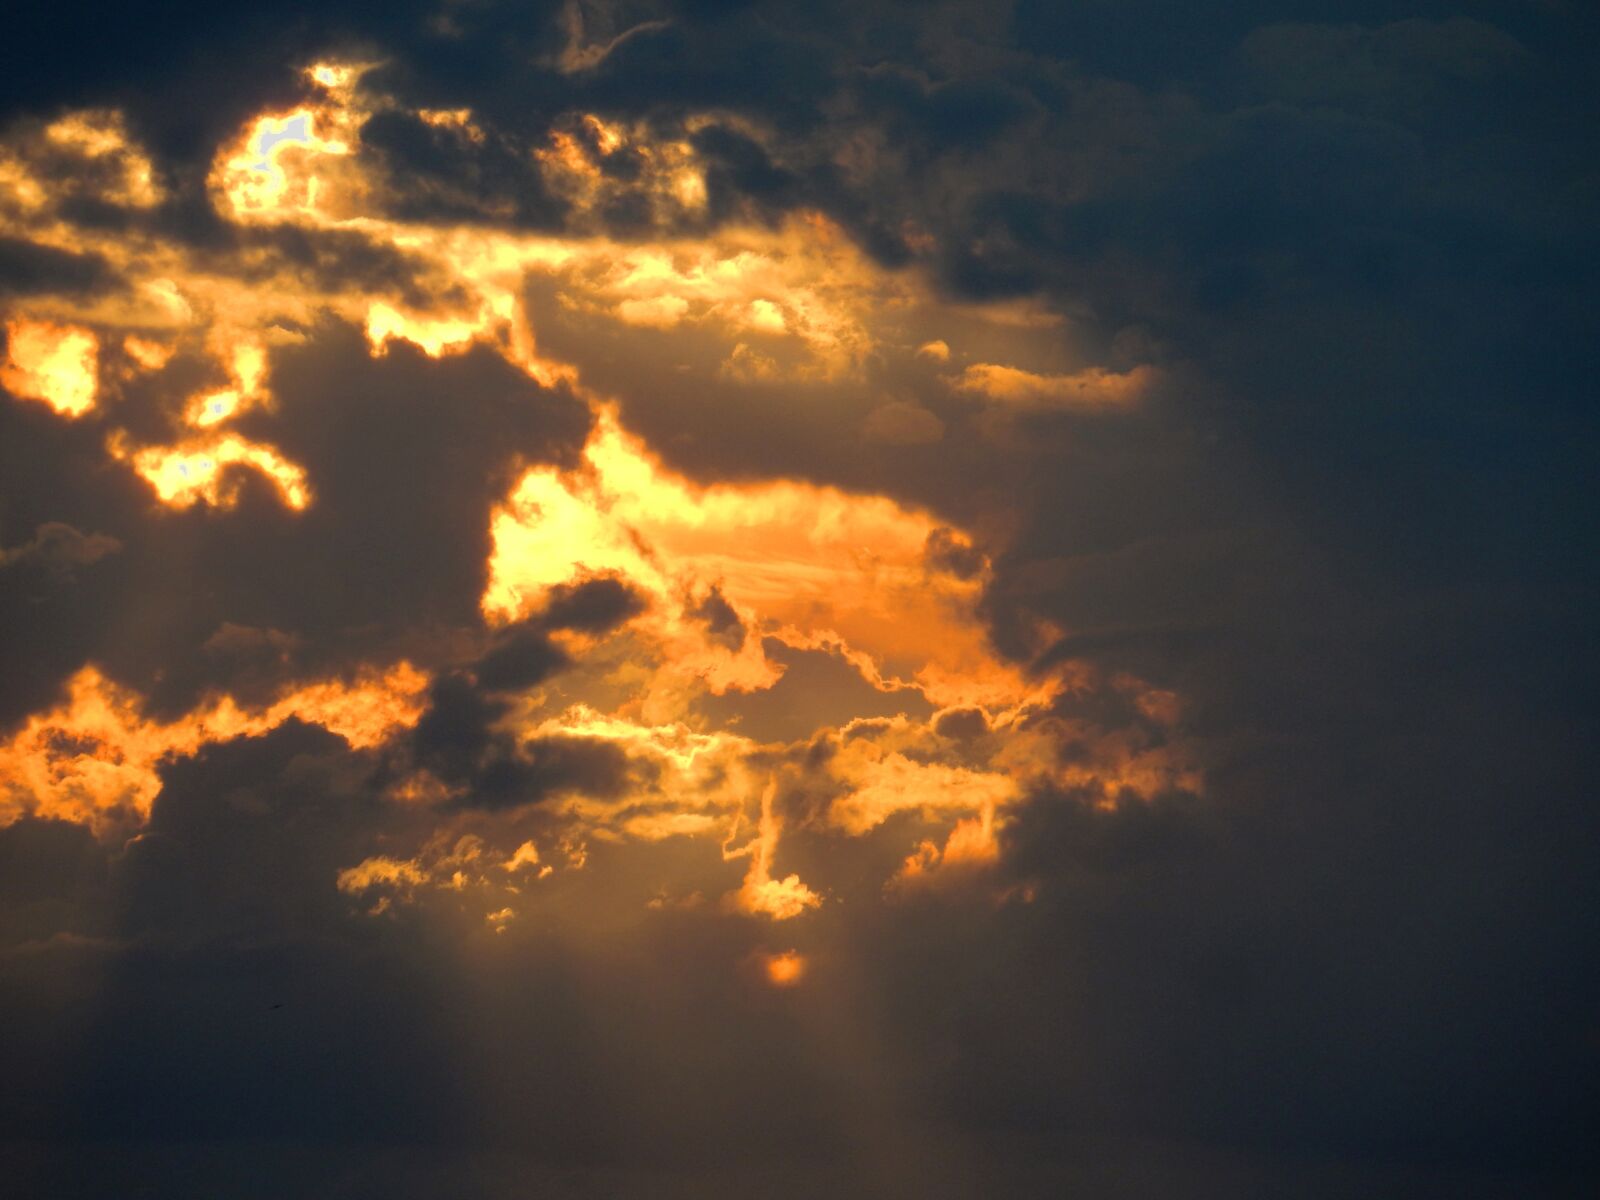 Nikon Coolpix S9900 sample photo. Sunset, raincloud, clouds photography